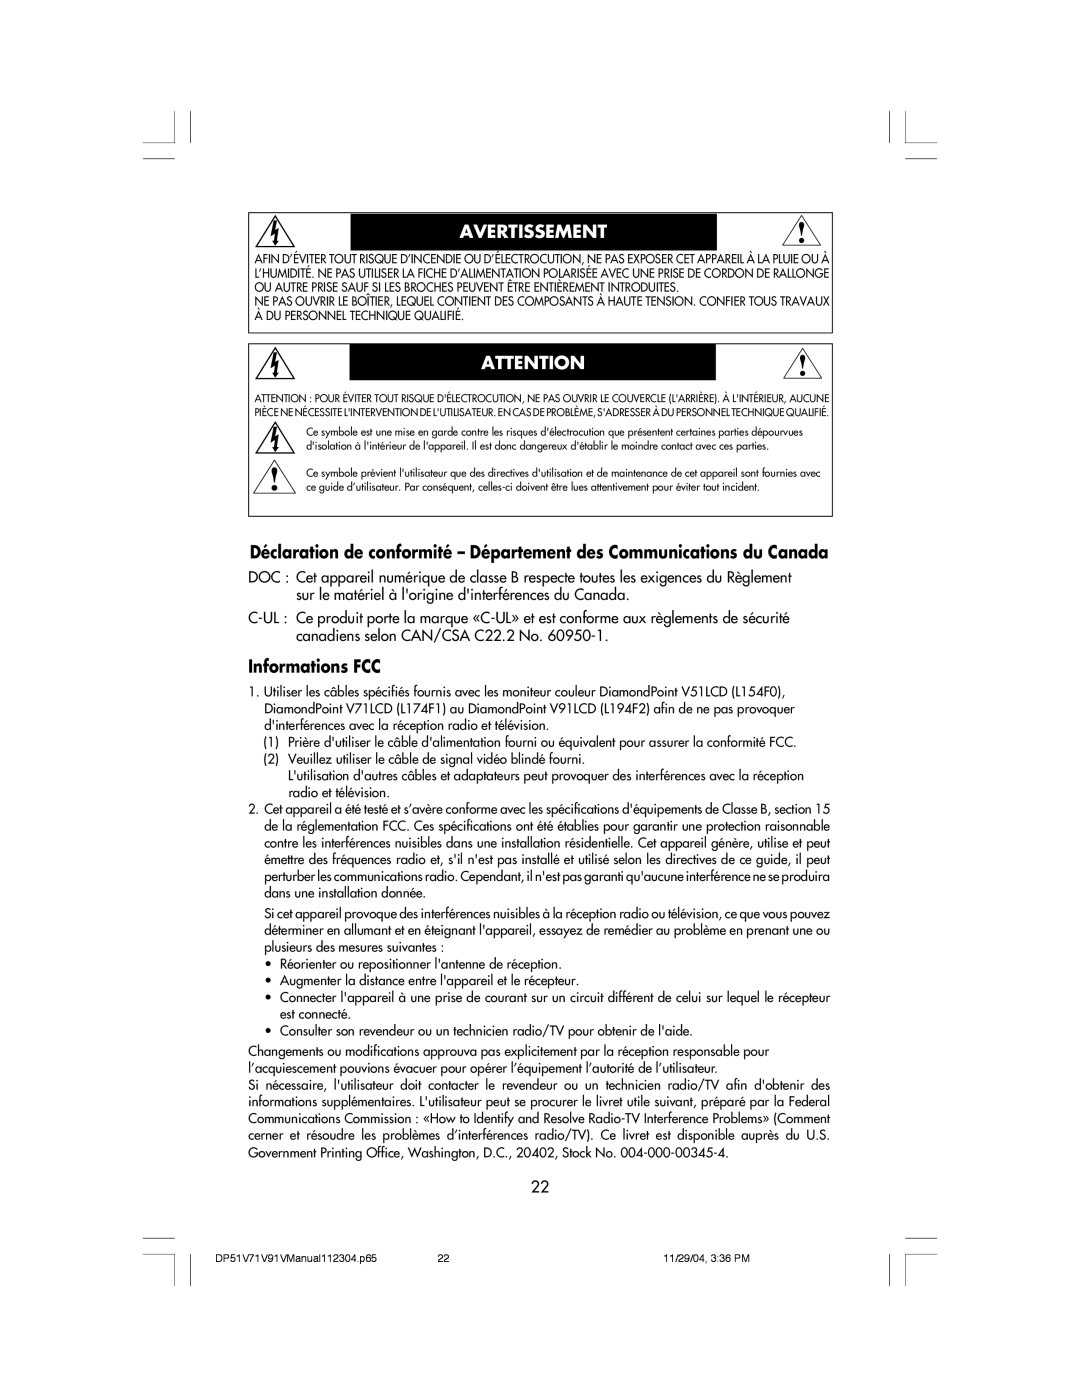 Mitsubishi Electronics V91LCD manual Déclaration de conformité - Département des Communications du Canada, Informations FCC 